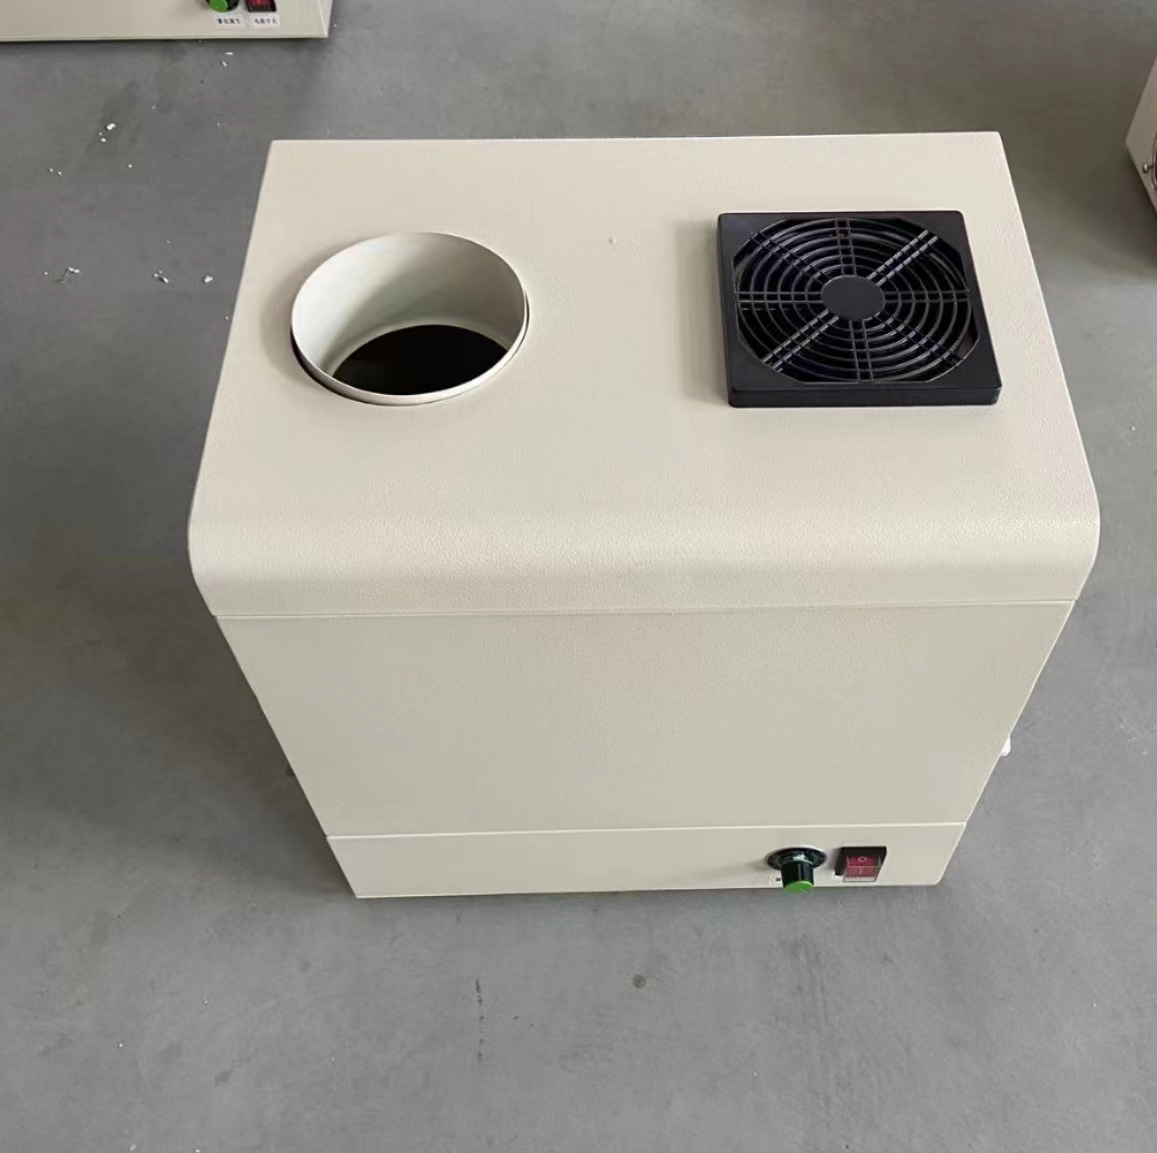 LS-800降尘贴膜车间雾化降尘设备雾化降尘喷雾系统